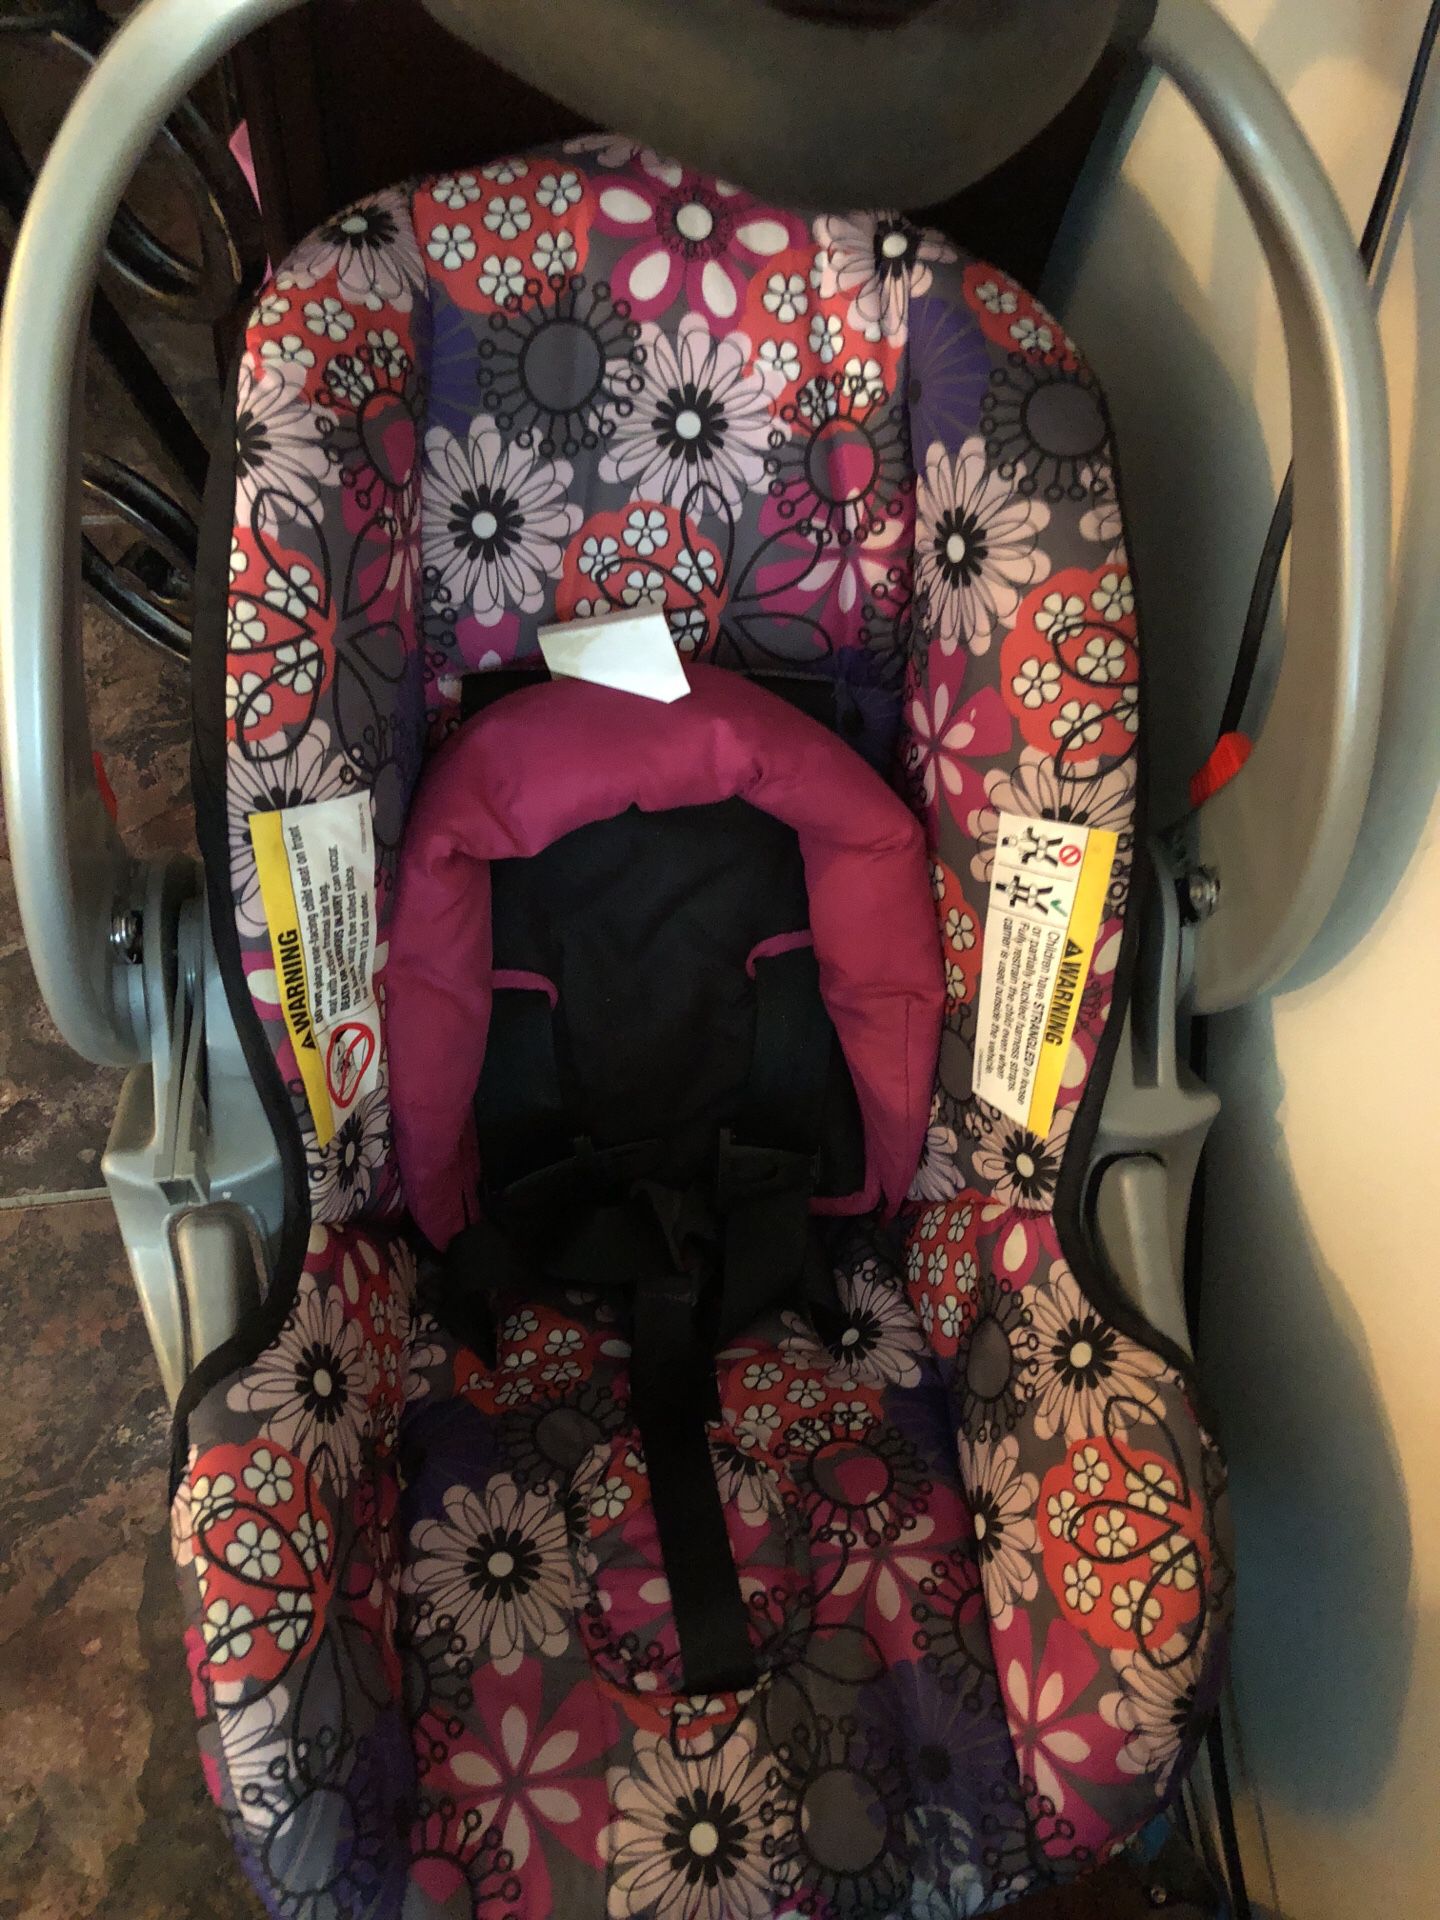 Baby girl car seat